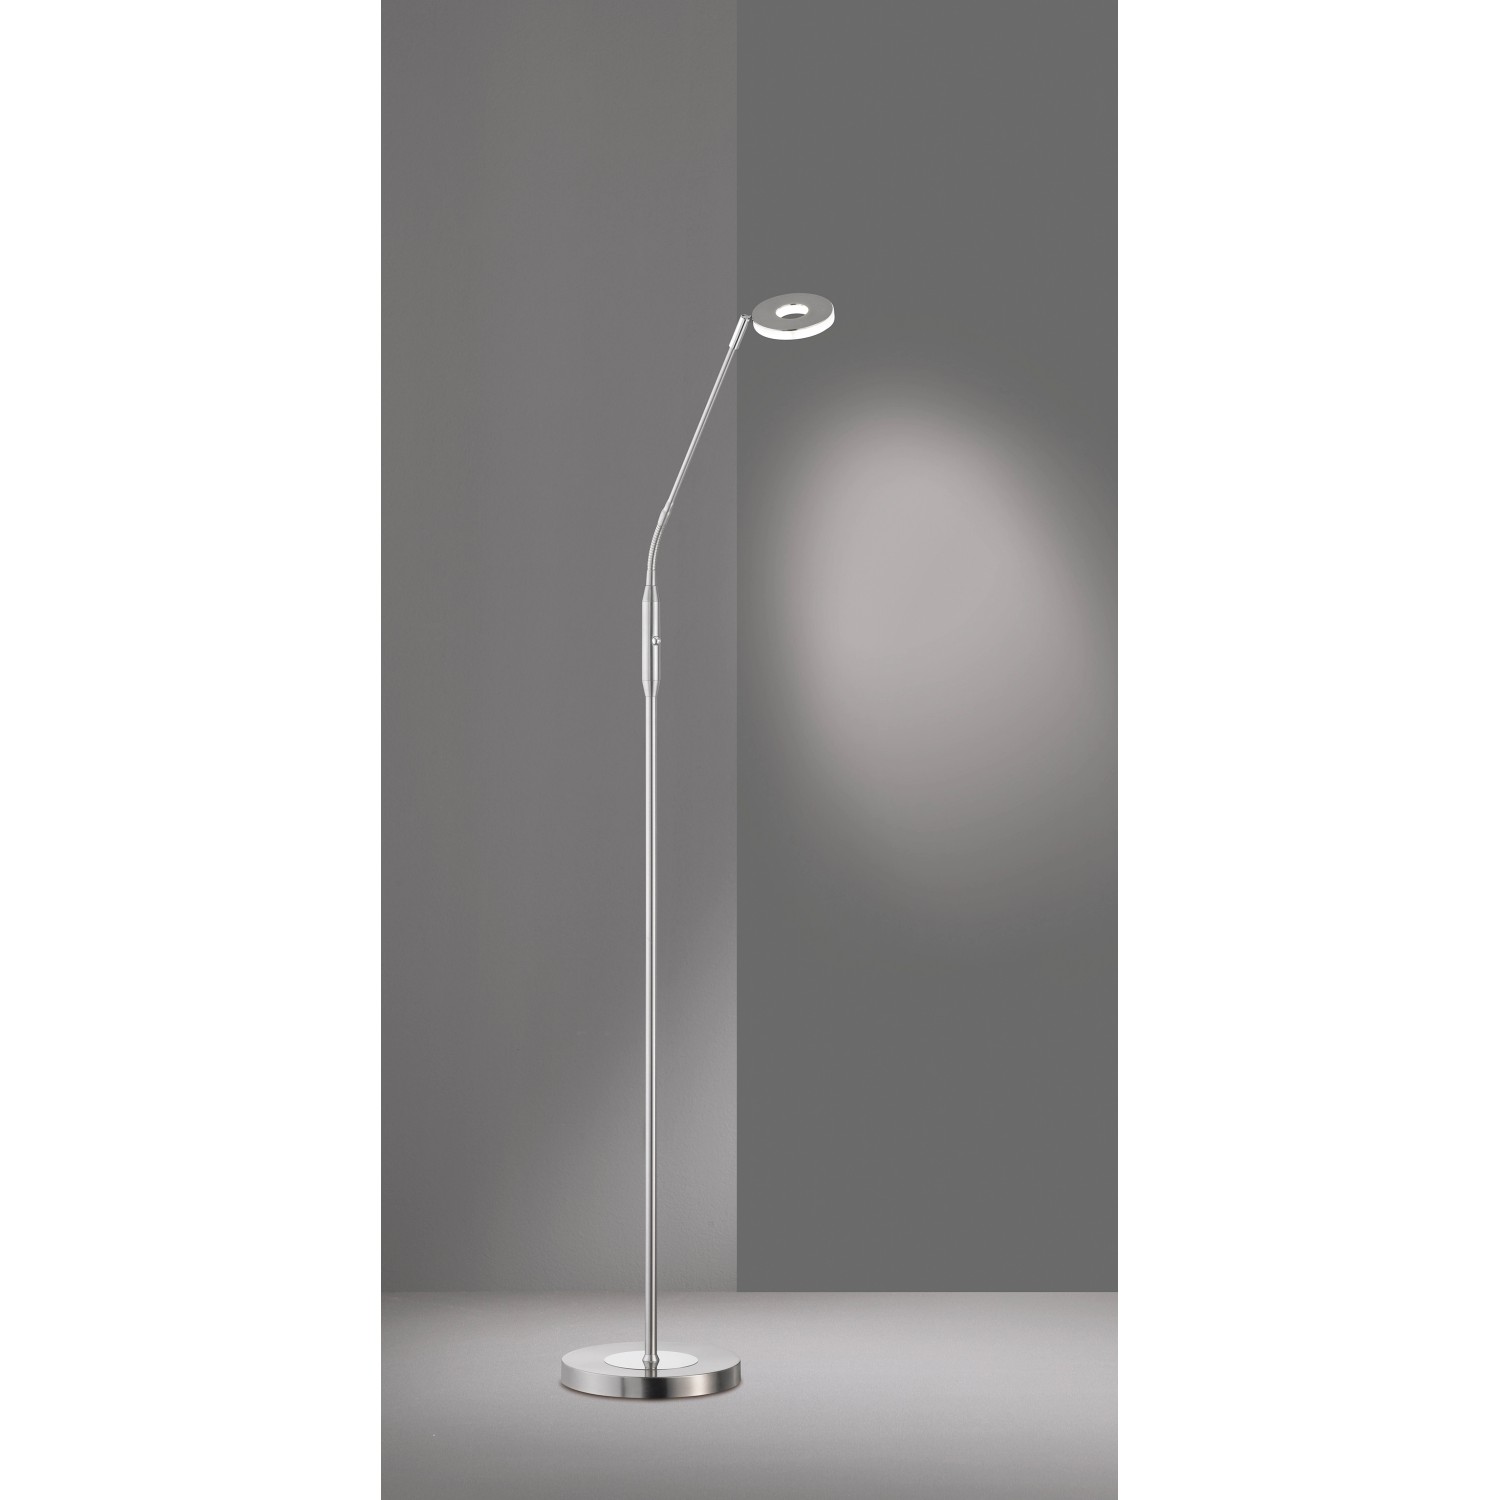 Fischer & Honsel LED-Stehlampe Dent 6 W warmweiß